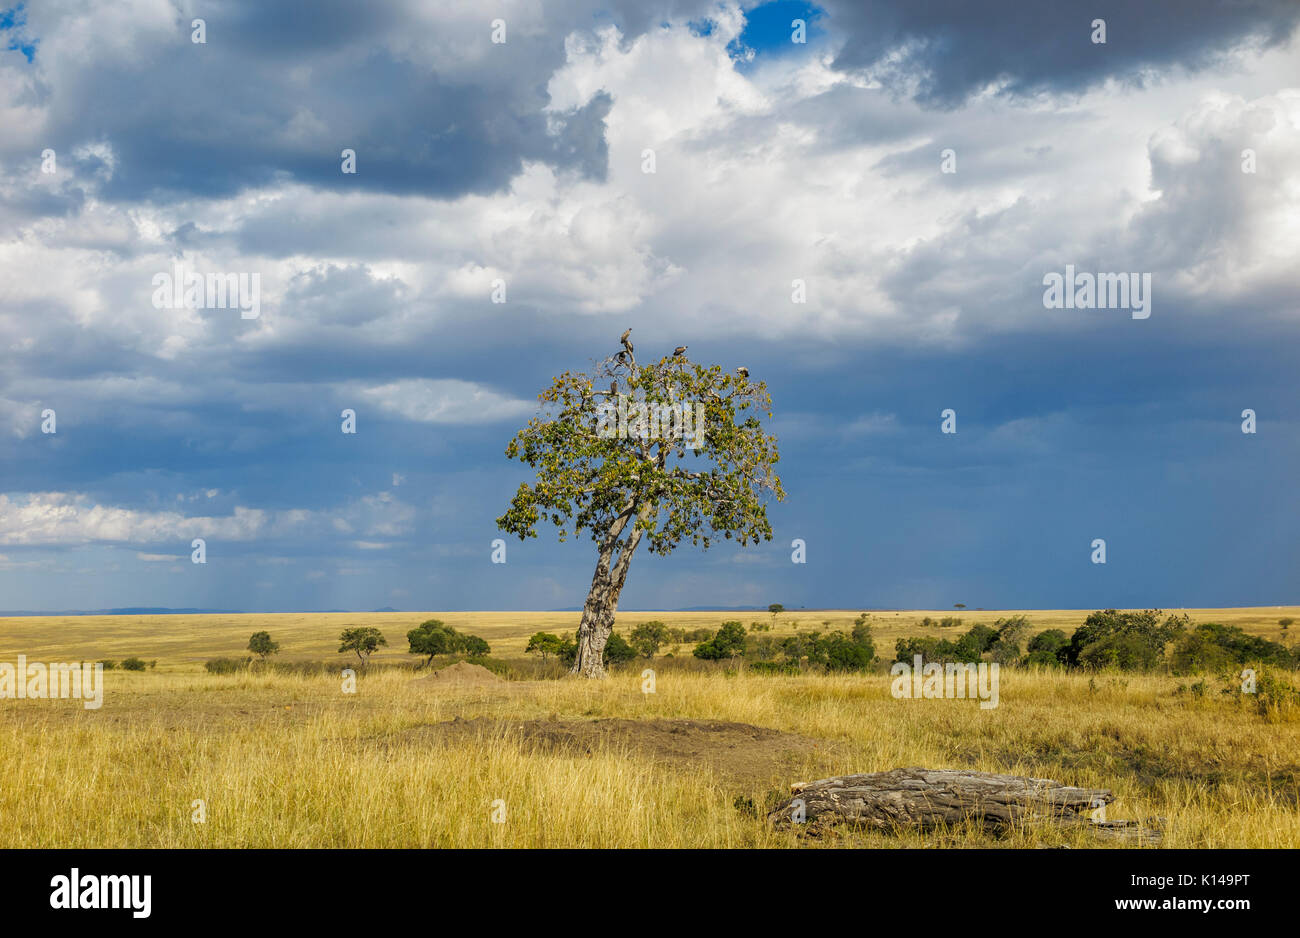 Landschaft in Savanne Grünland in Masai Mara, Kenia mit Geier hocken in einem Baum gegen einen bewölkten Himmel mit aufkommender Regen Wolken Stockfoto